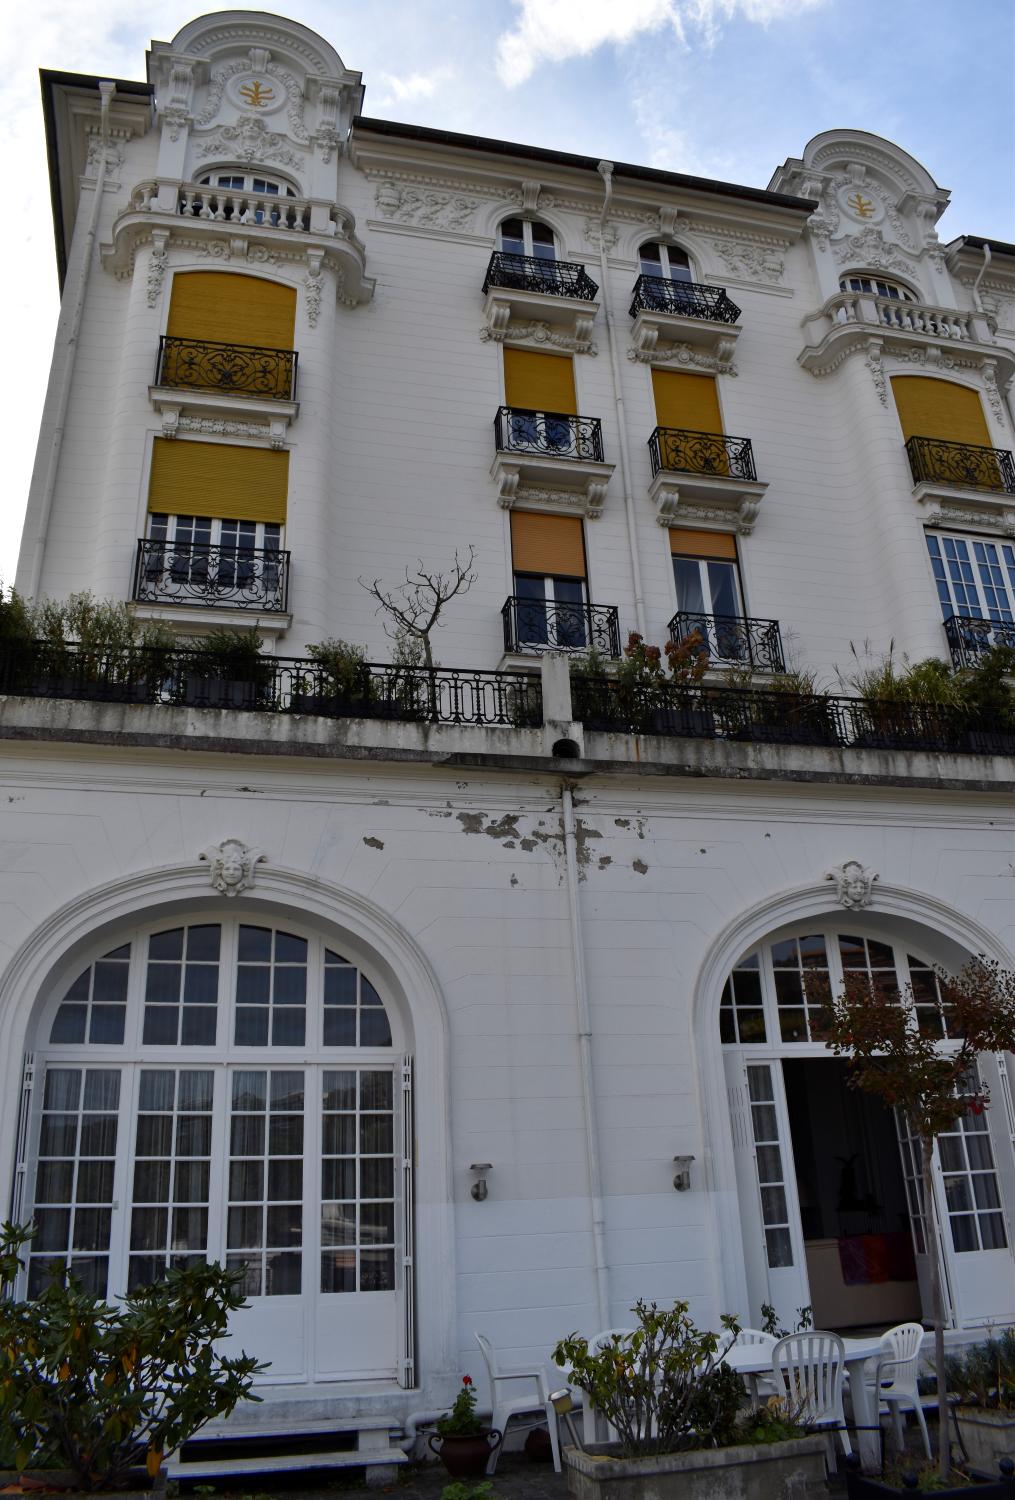 Hôtel de voyageurs dit Royat-palace actuellement immeuble